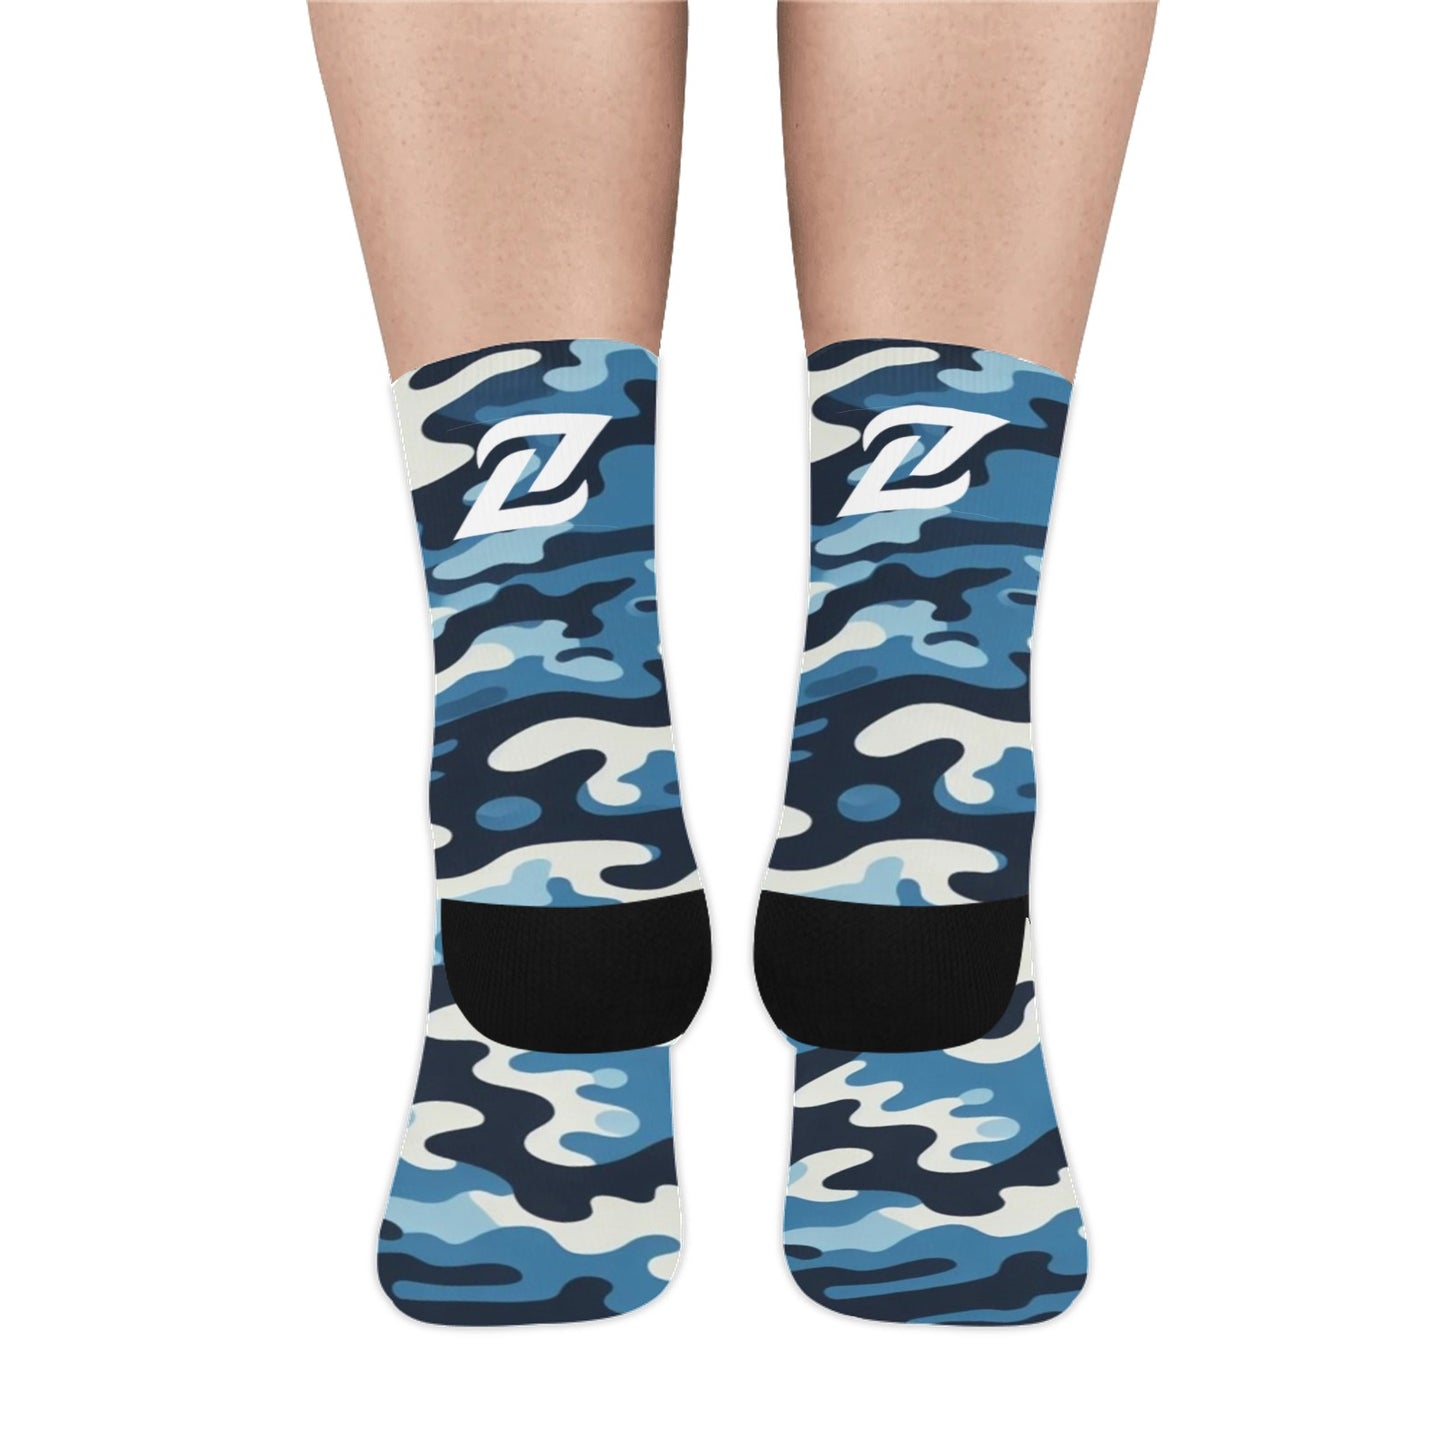 Zen Socks - Blue Camo